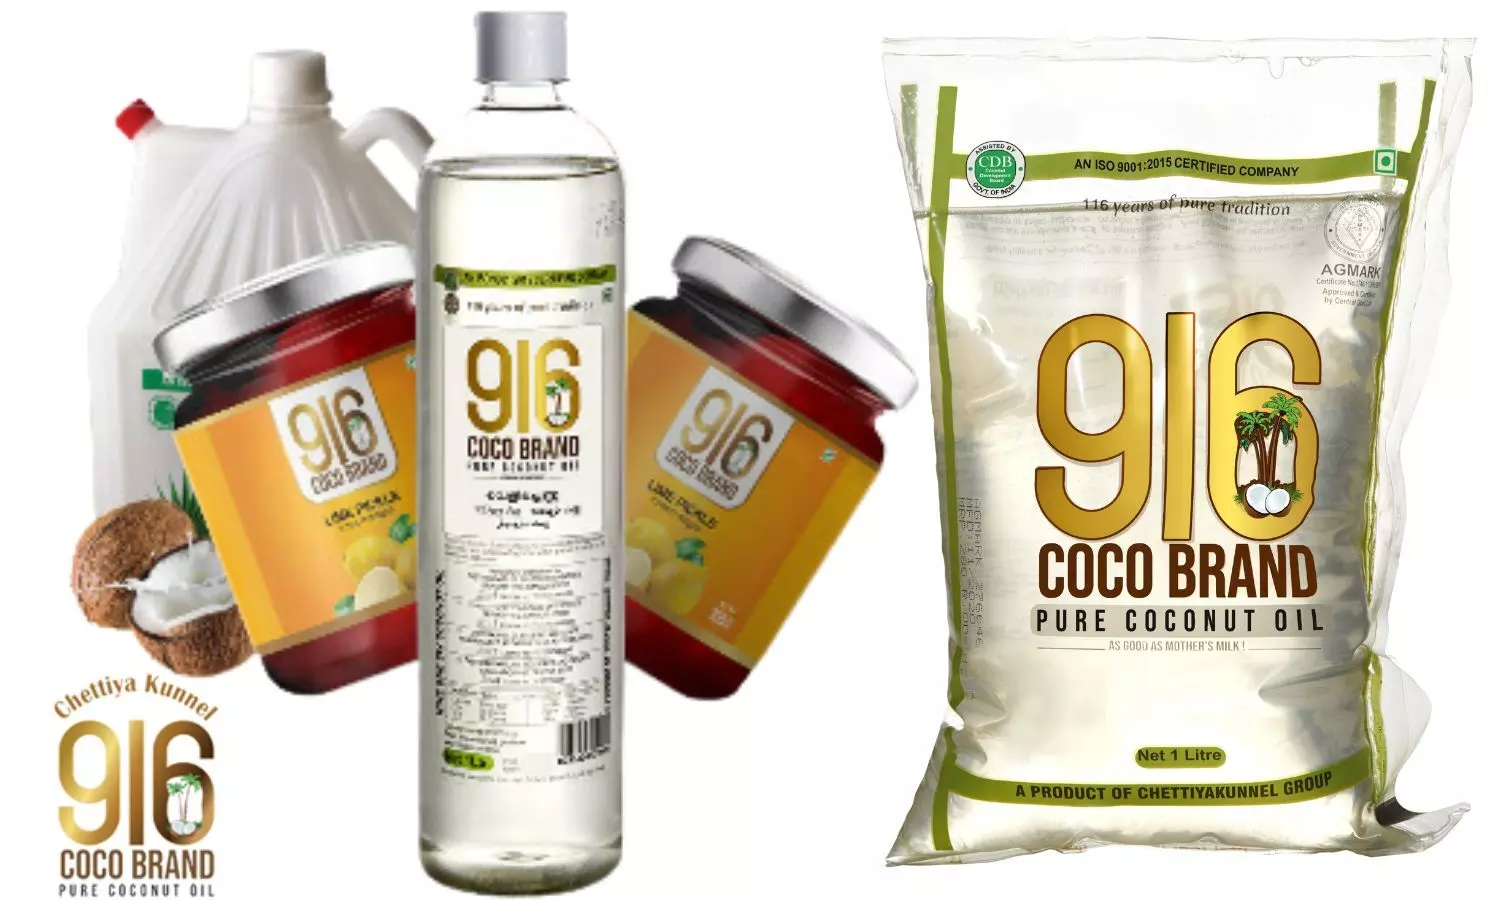 Coco brand coconut oil